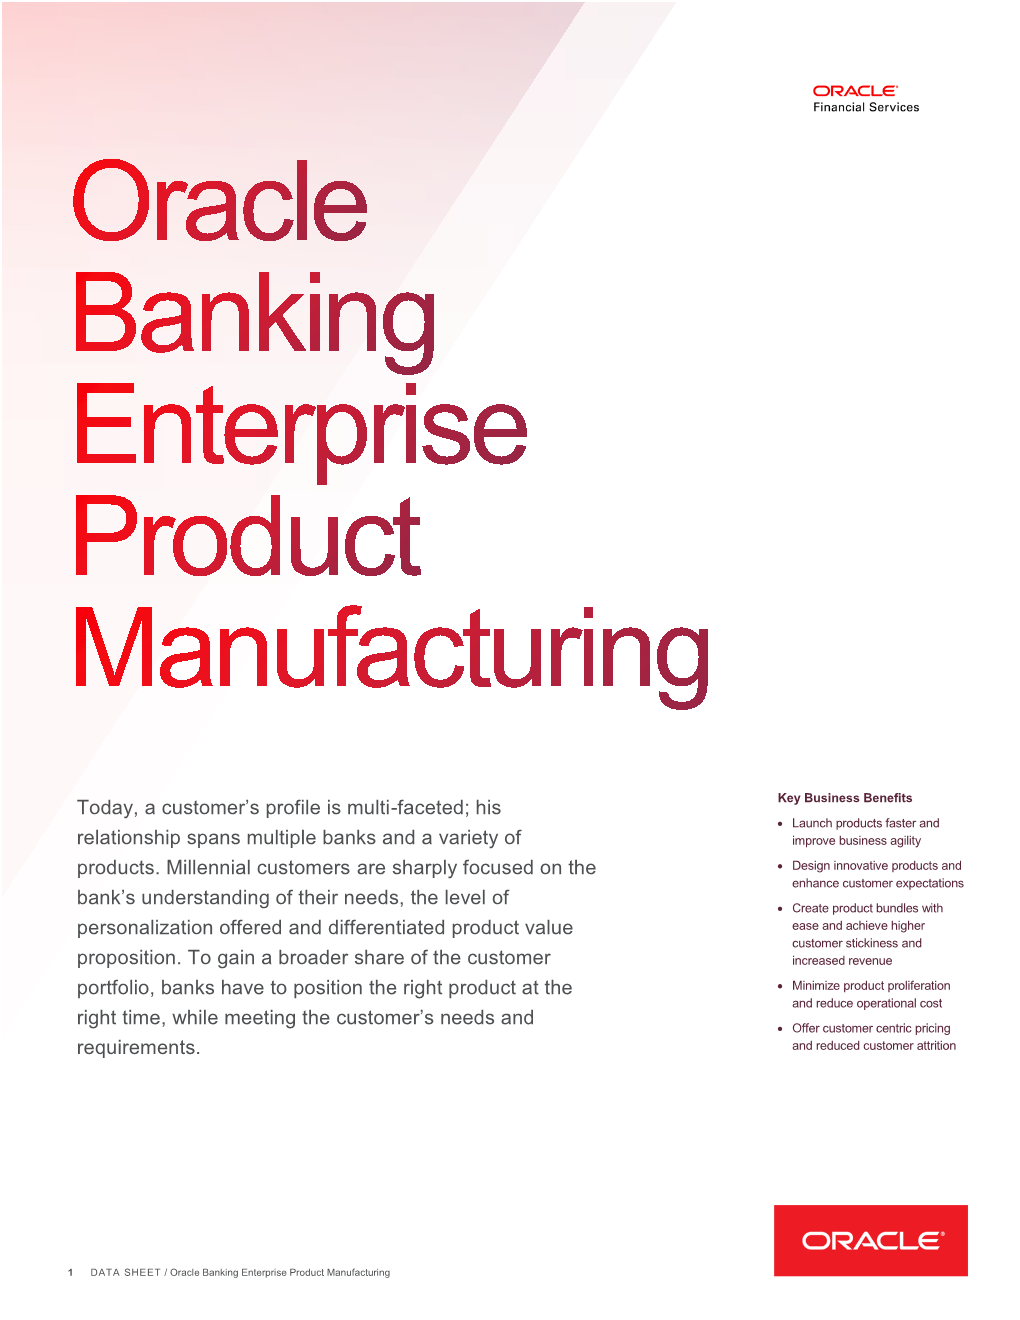 Data Sheet: Oracle Banking Enterprise Product Manufacturing